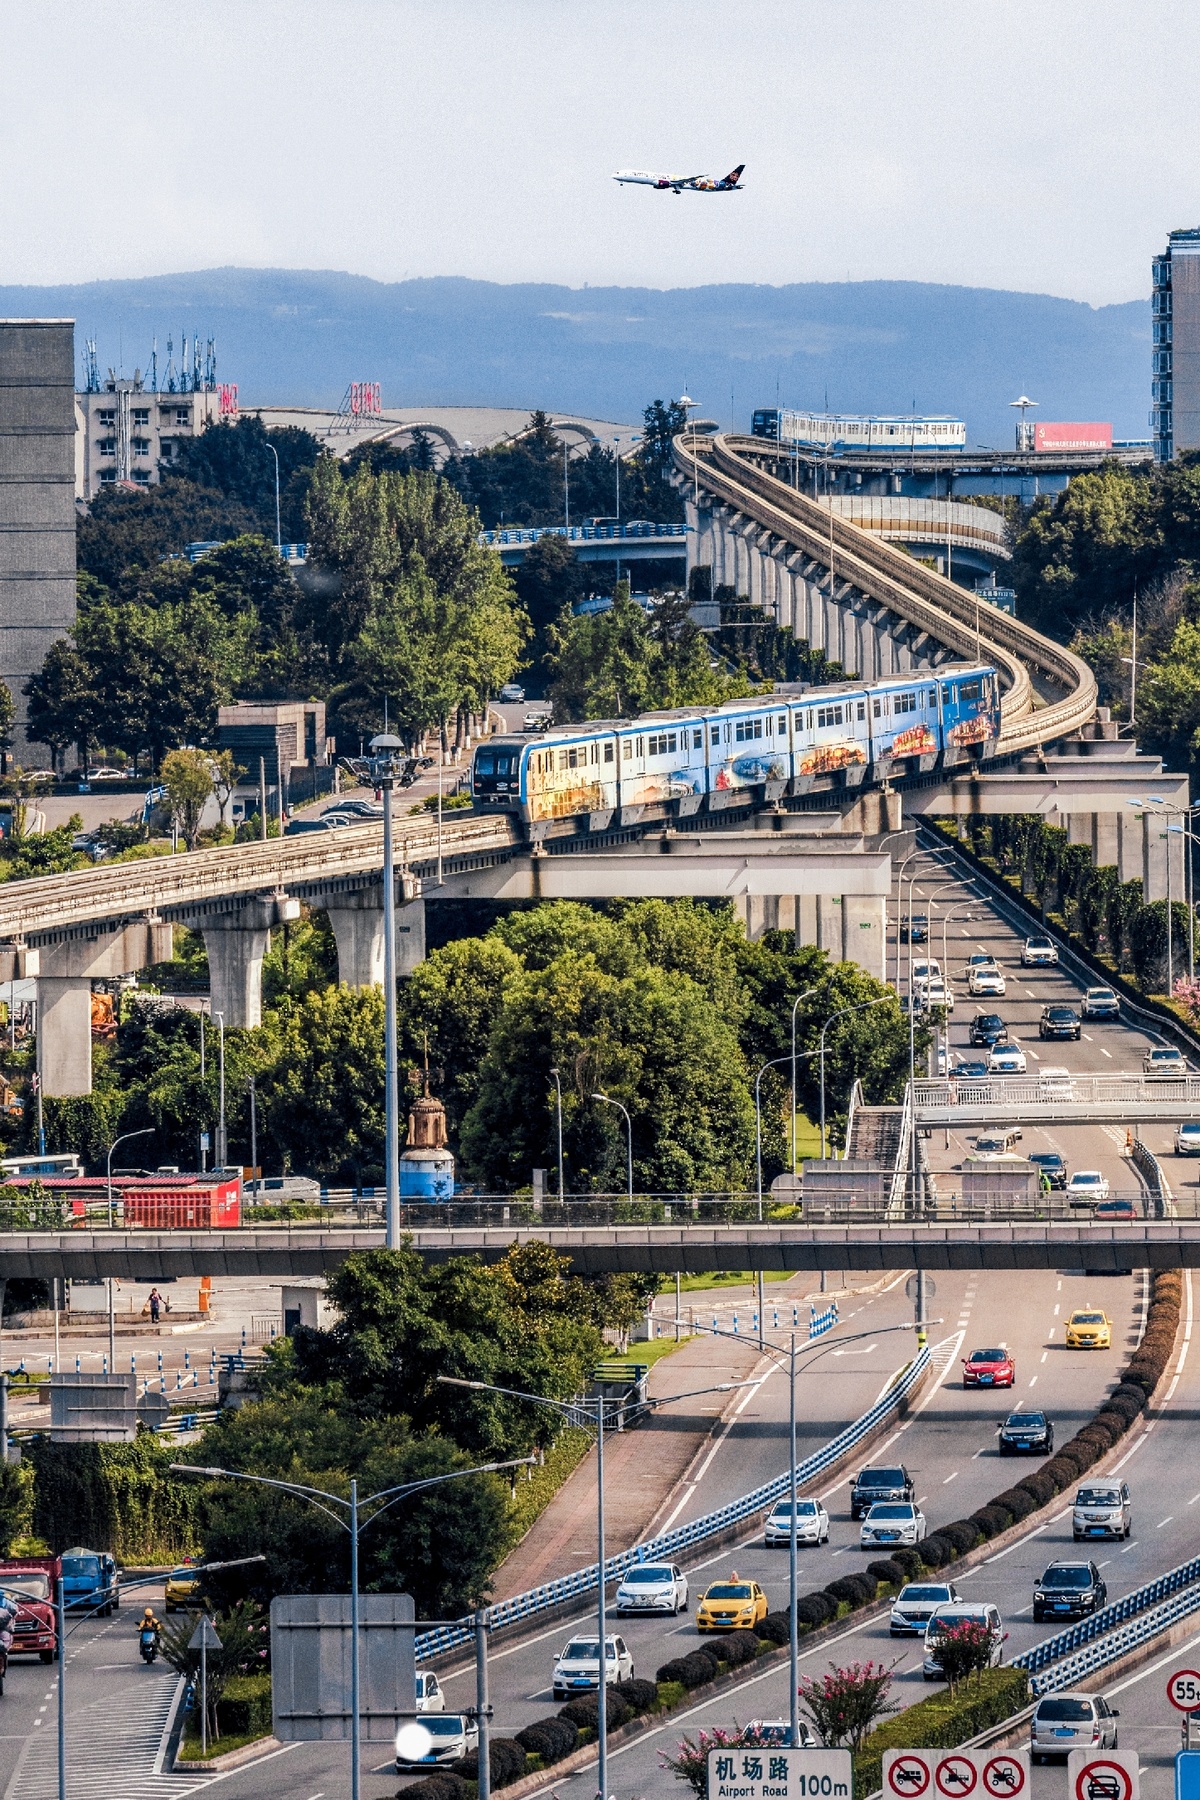 一架飞机飞越一个充满众多交通的城镇和一辆蓝色的火车在公路上行驶。